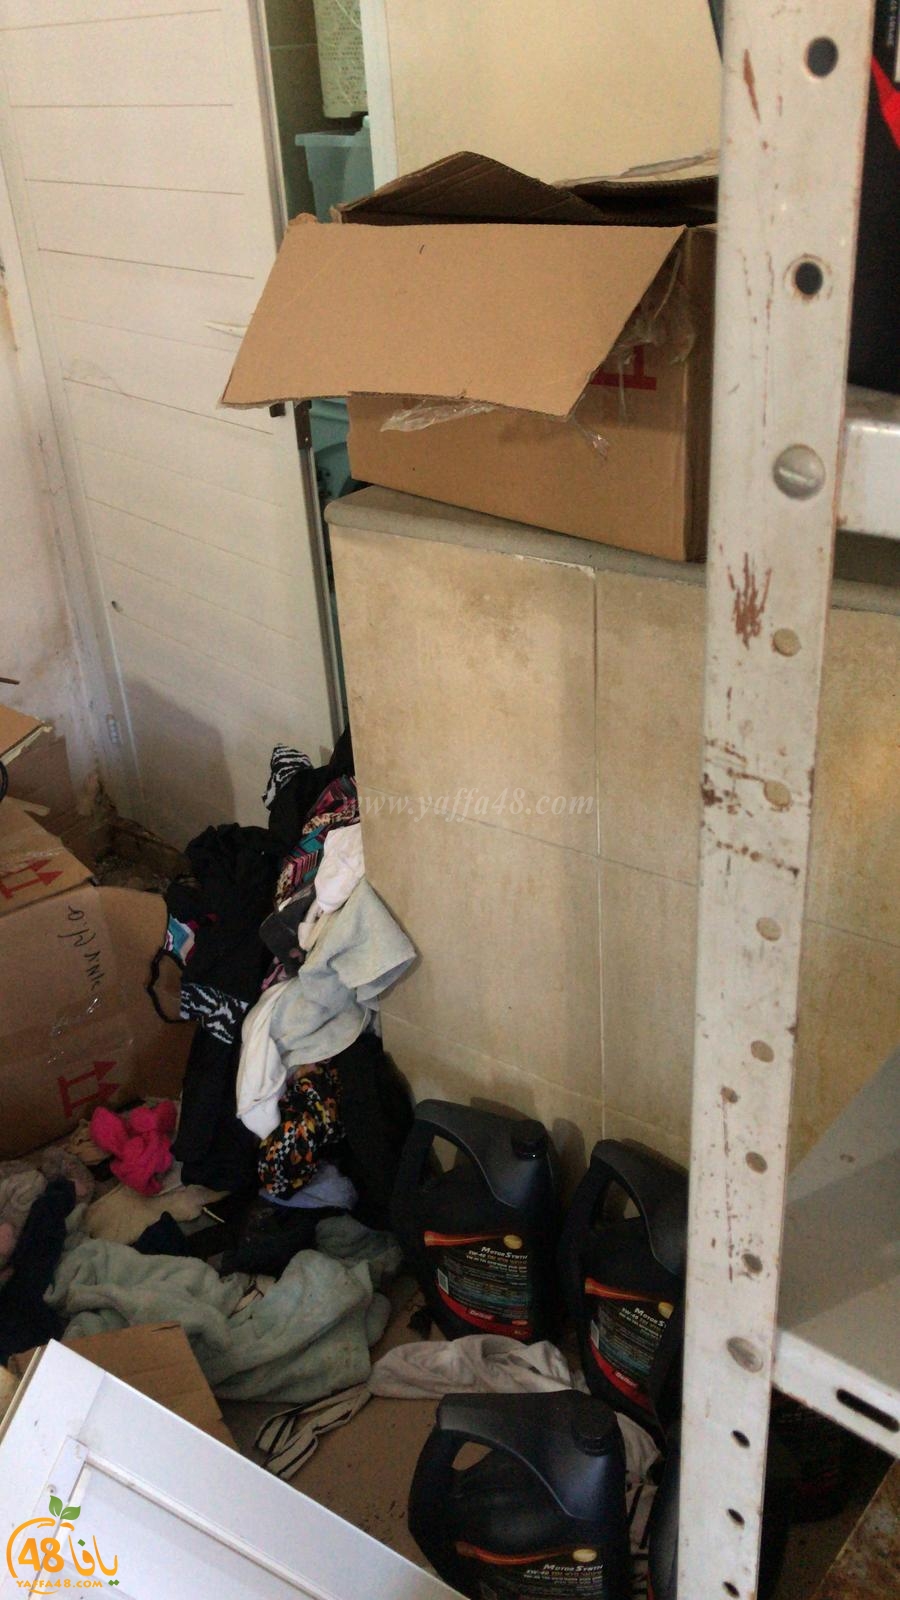  بالفيديو: الشرطة تداهم بيت عائلة عربية في اللد وتعبث بمحتوياته وتصادر بعضها